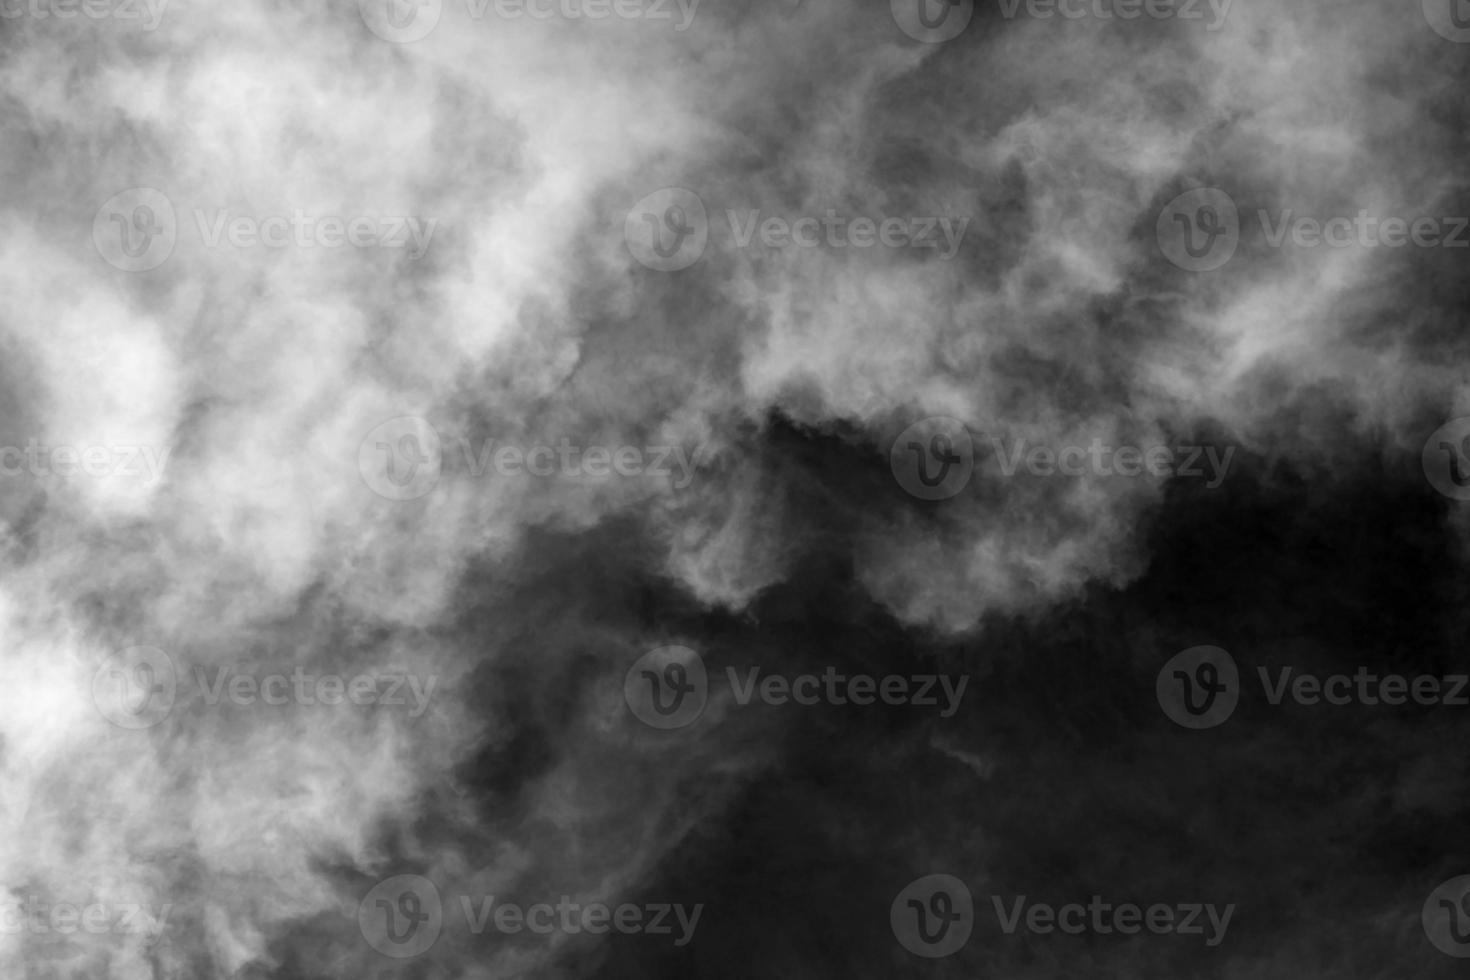 céu com fundo texturizado nuvem preto e branco foto